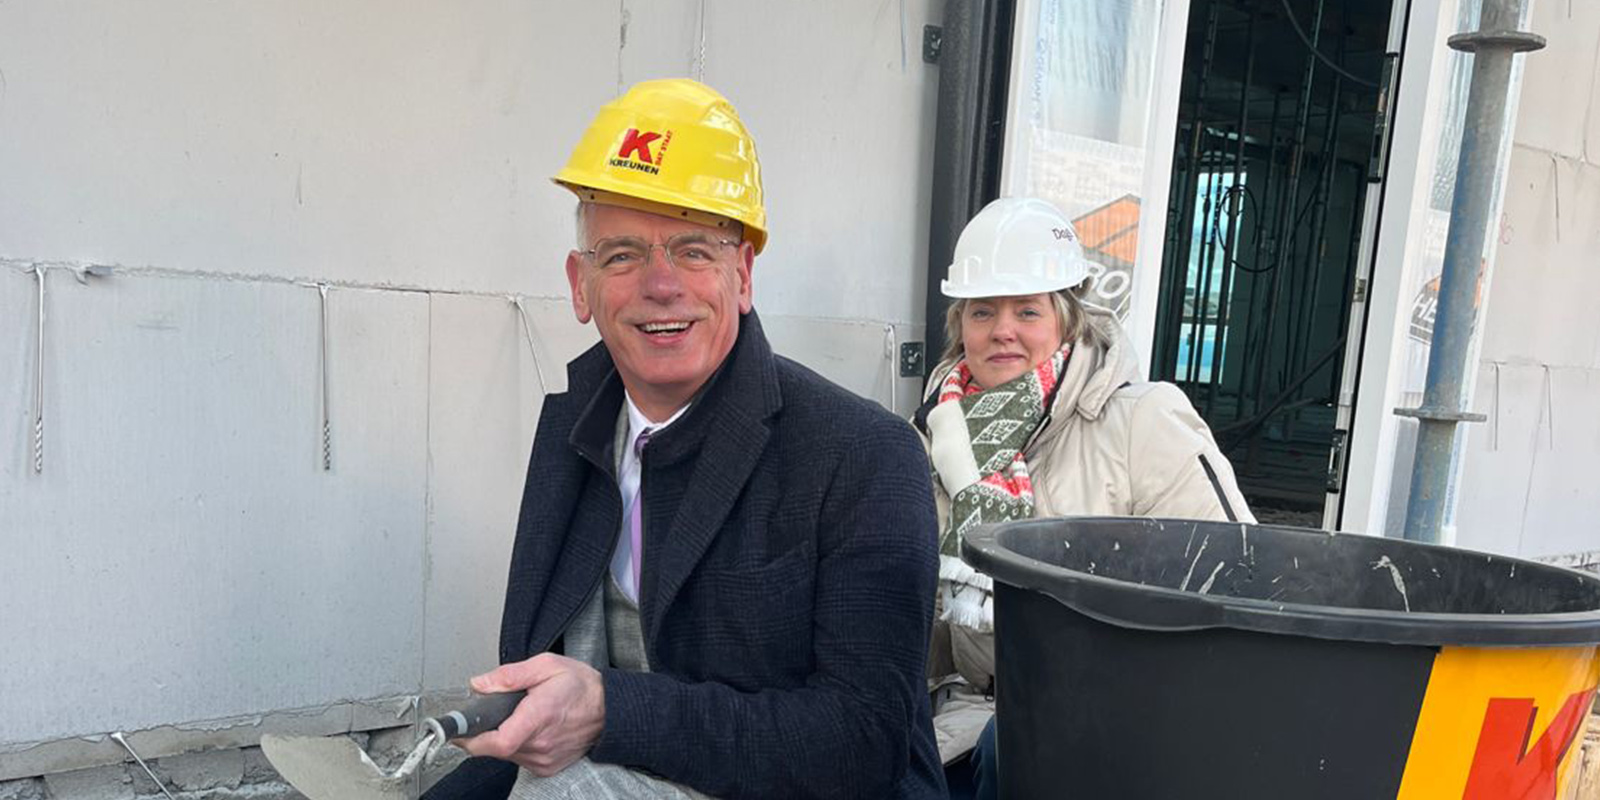 Wethouder en locatiemanager metselen samen de eerste steen van Het Looleehuis, de kleinschalige woonzorglocatie voor mensen met dementie in Almelo.